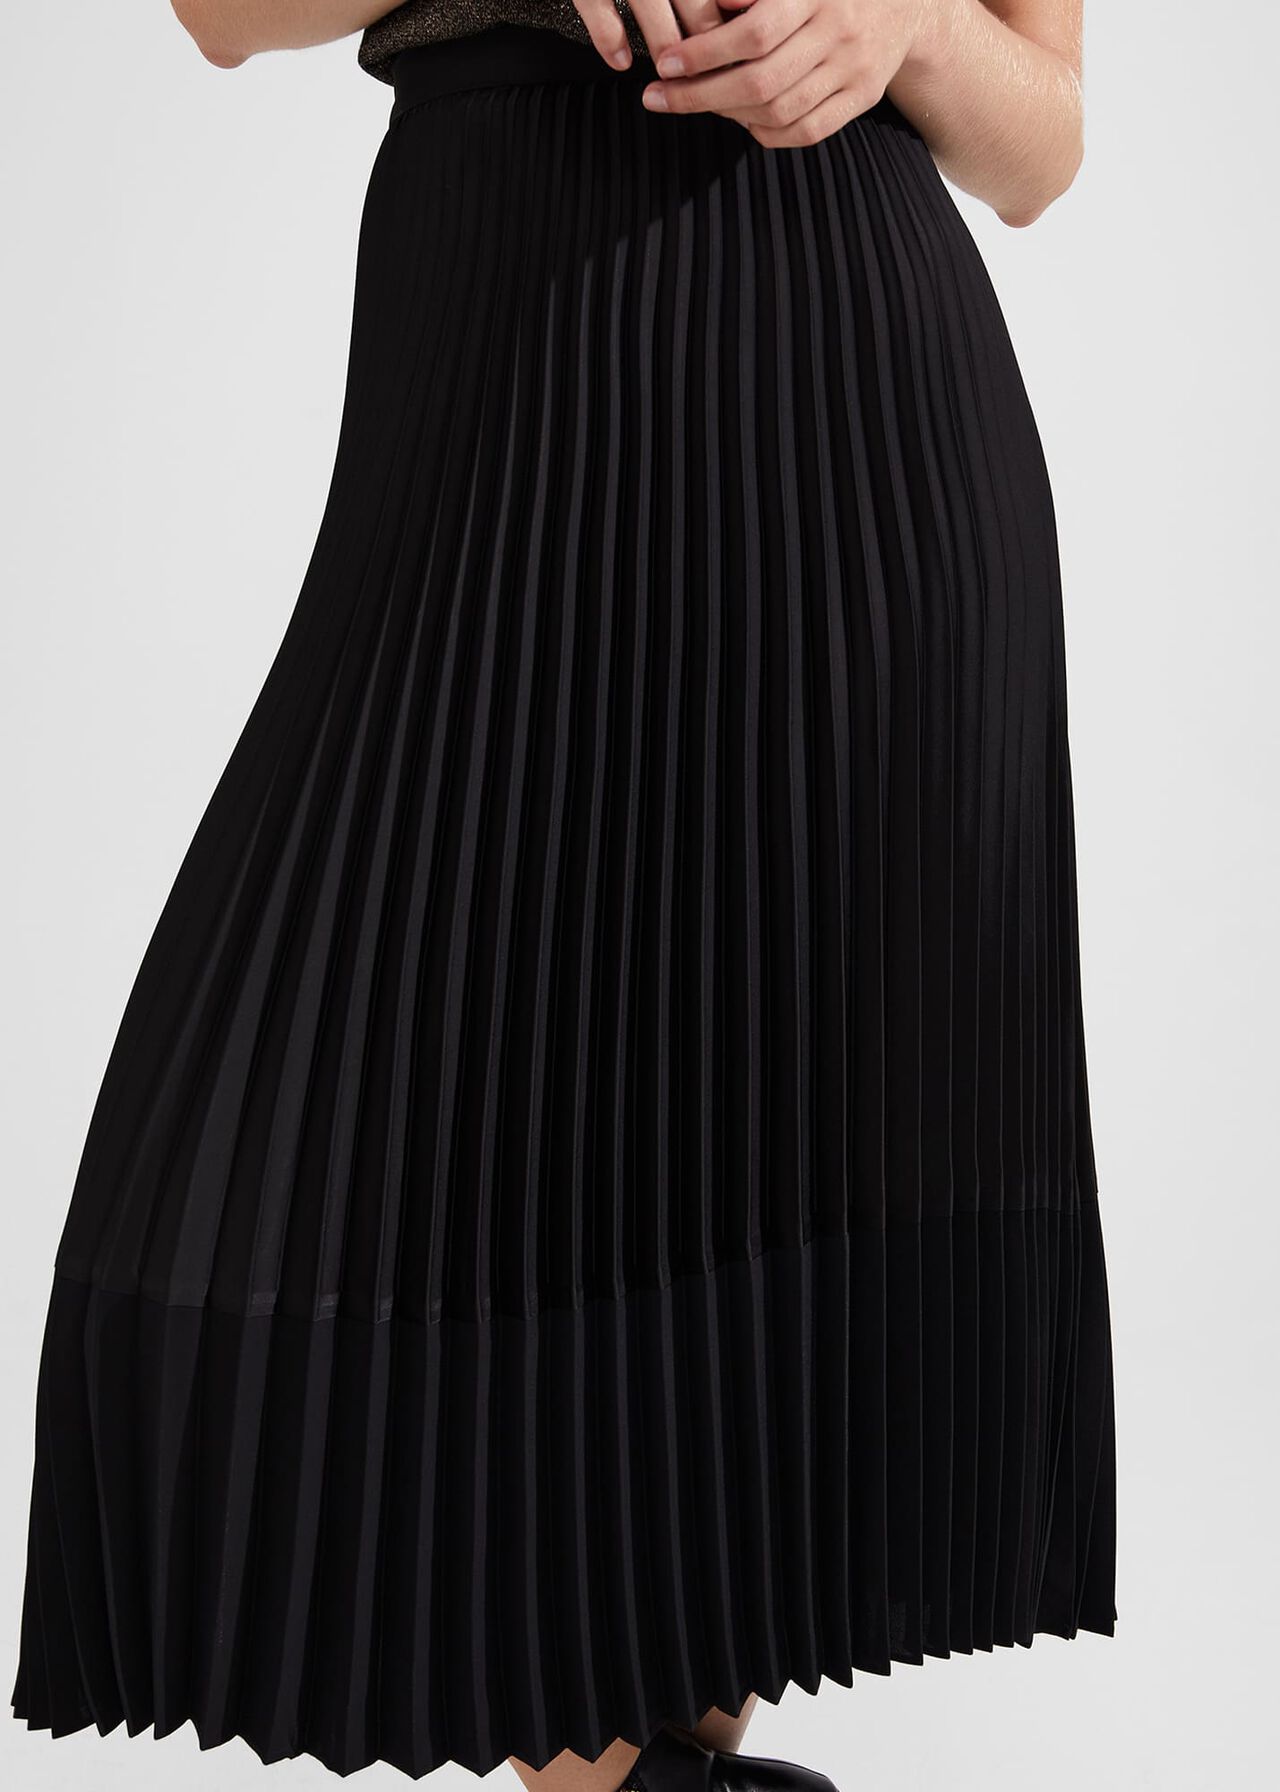 Thandie Skirt, Black, hi-res